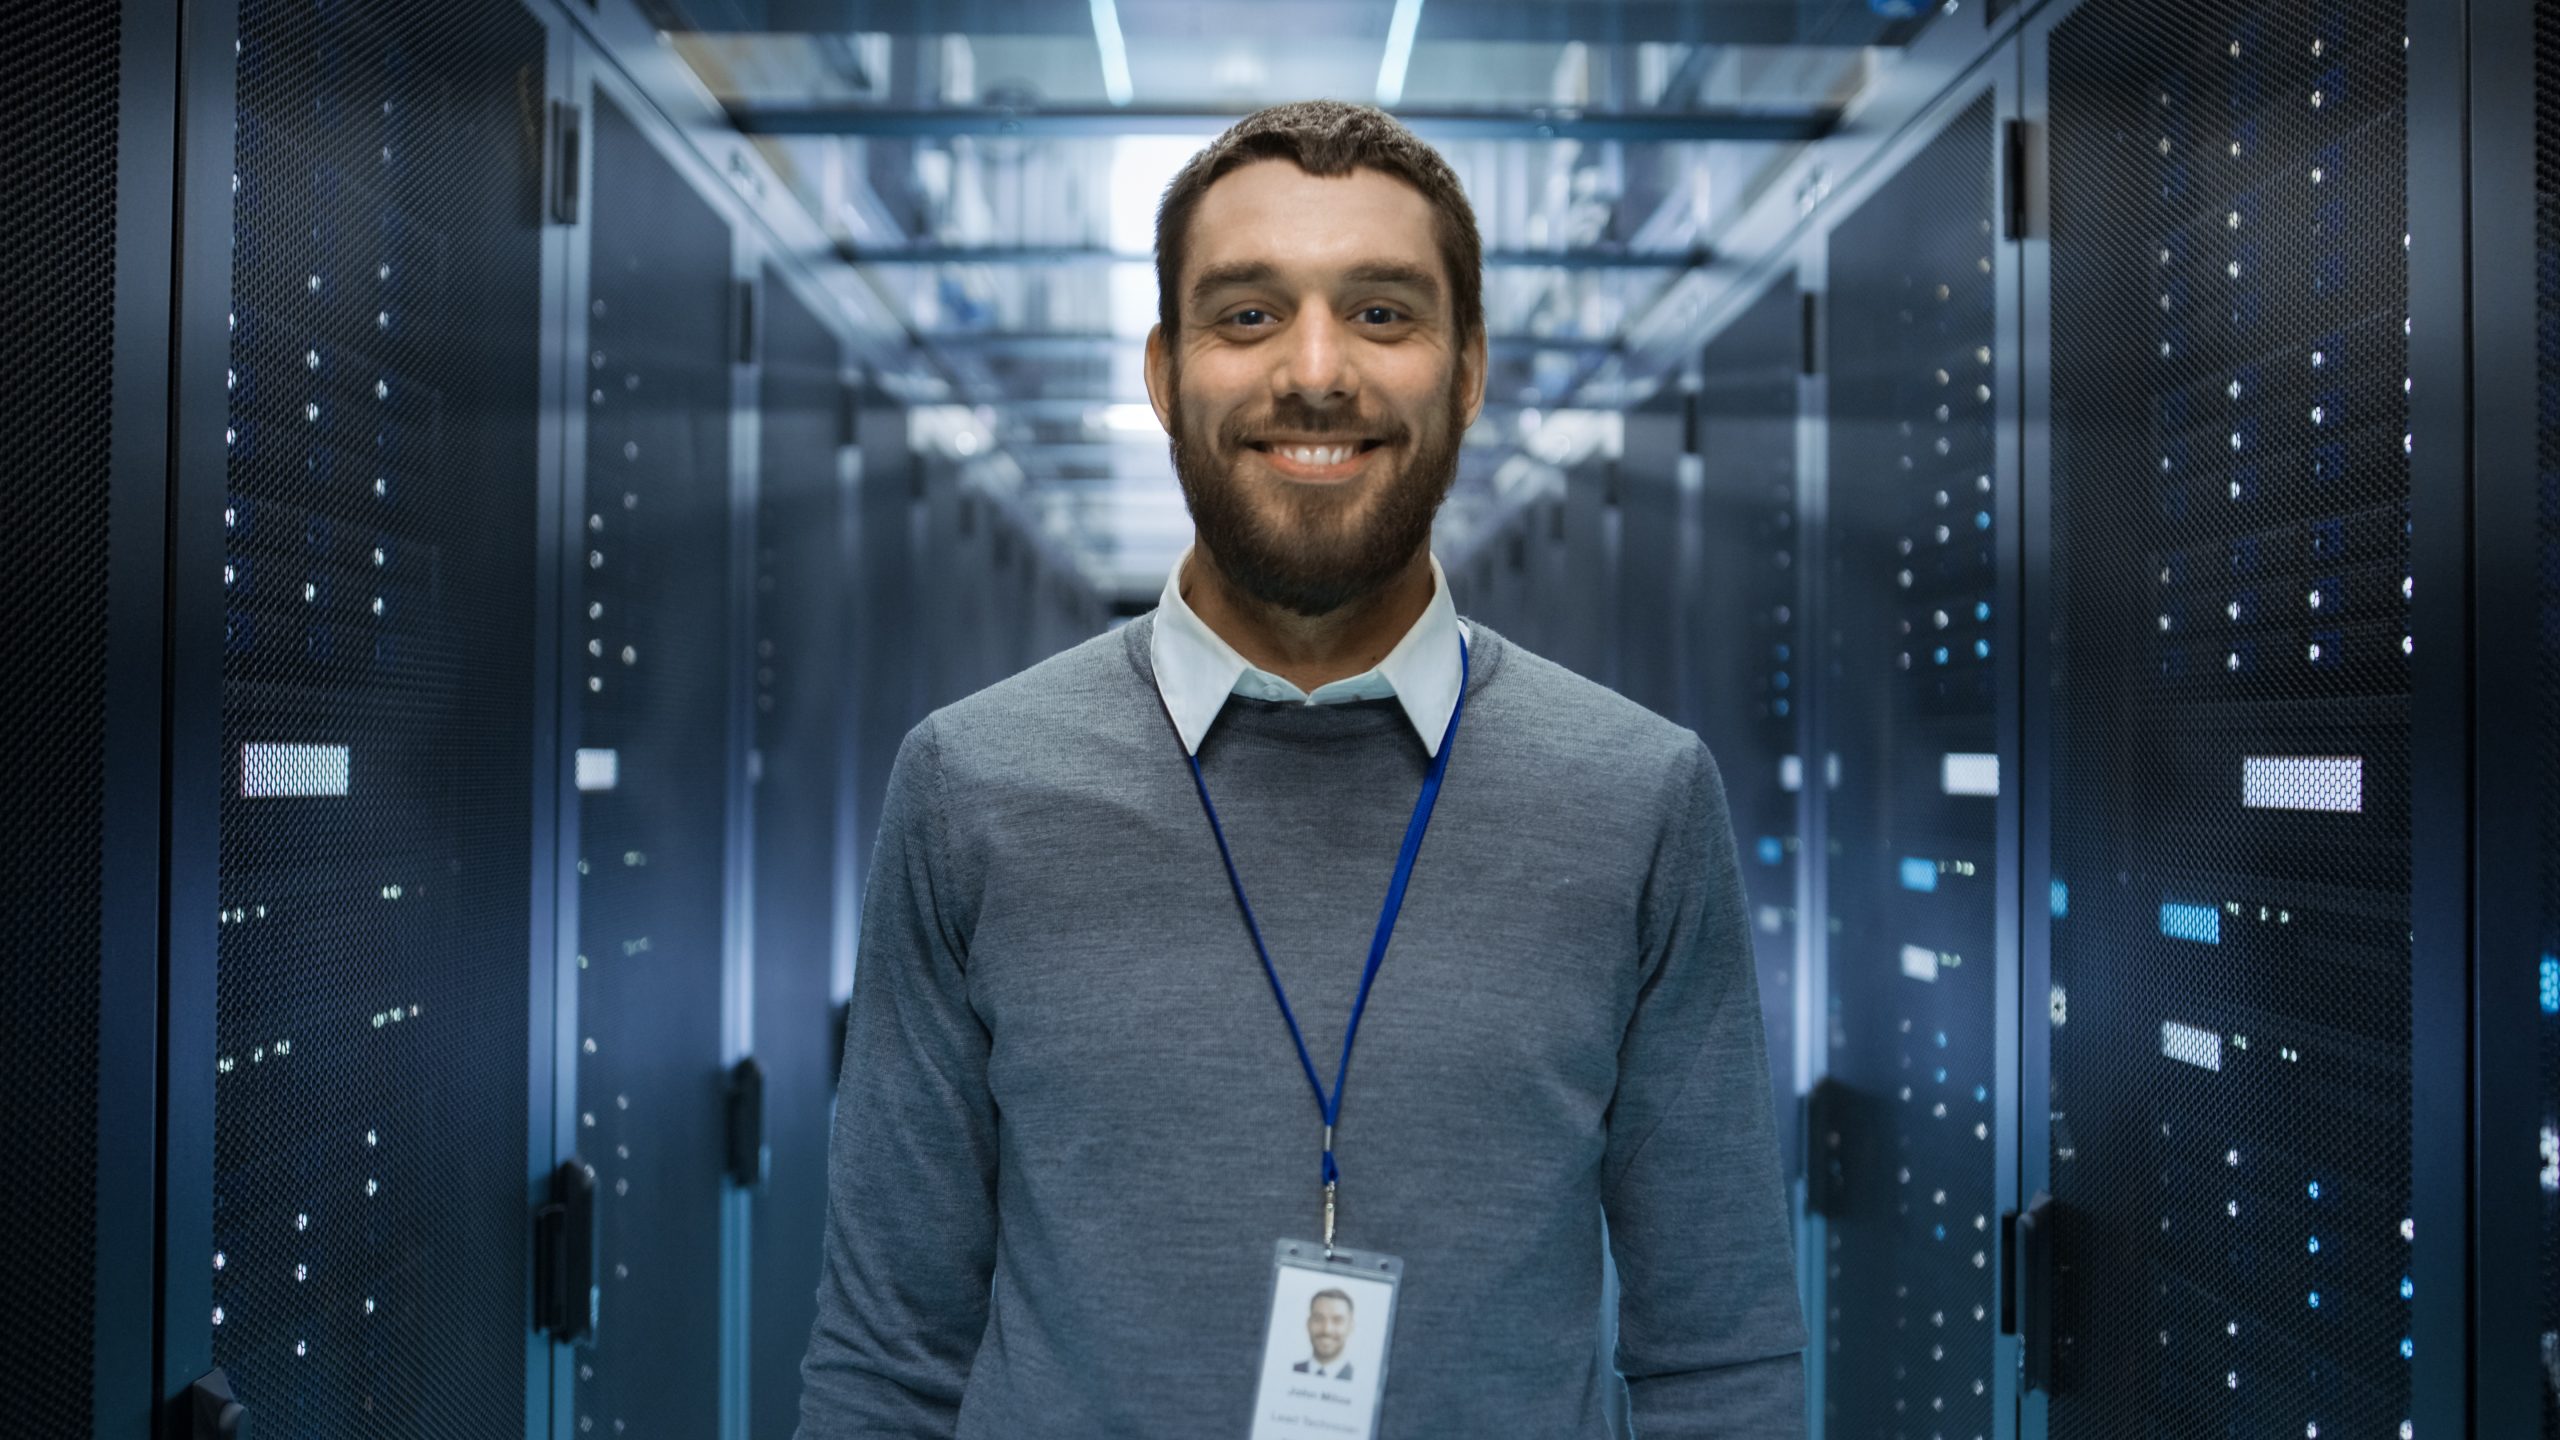 Porträt eines neugierigen, positiv gestimmten und lächelnden IT-Ingenieurs, der in der Mitte eines großen Serverraums im Rechenzentrum steht.